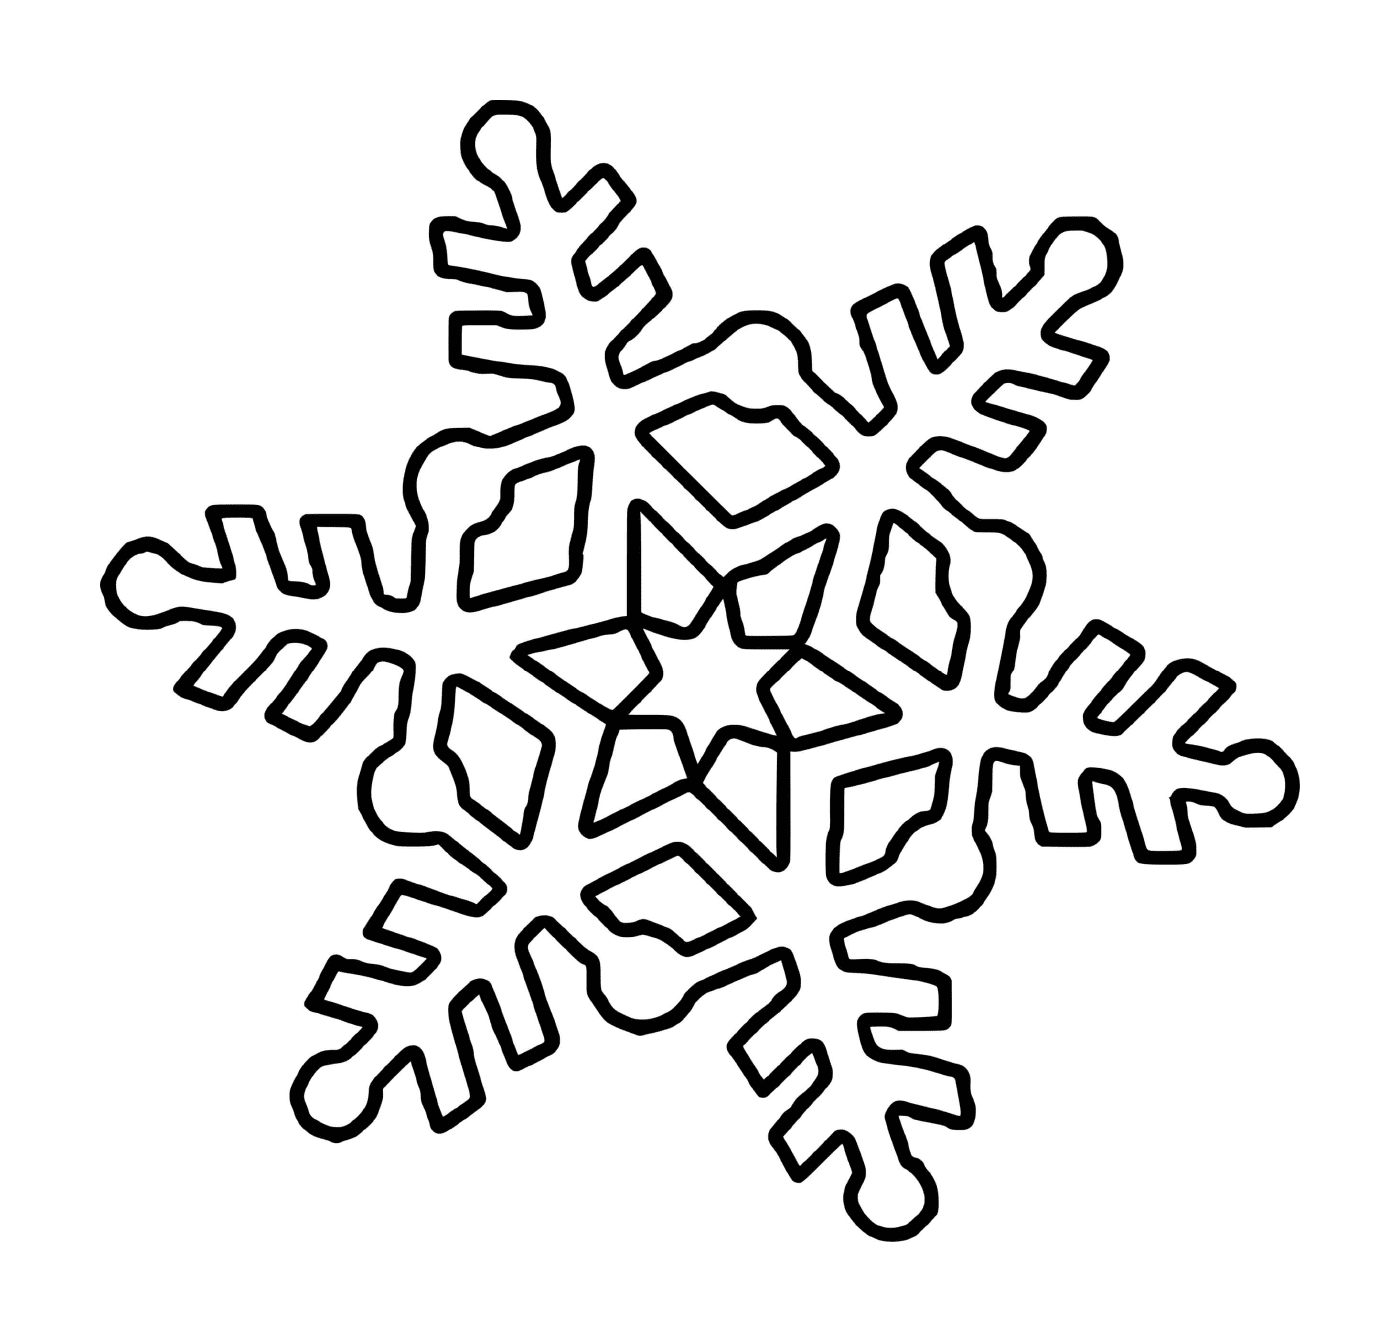  Un copo de nieve hexagonal con una estrella 